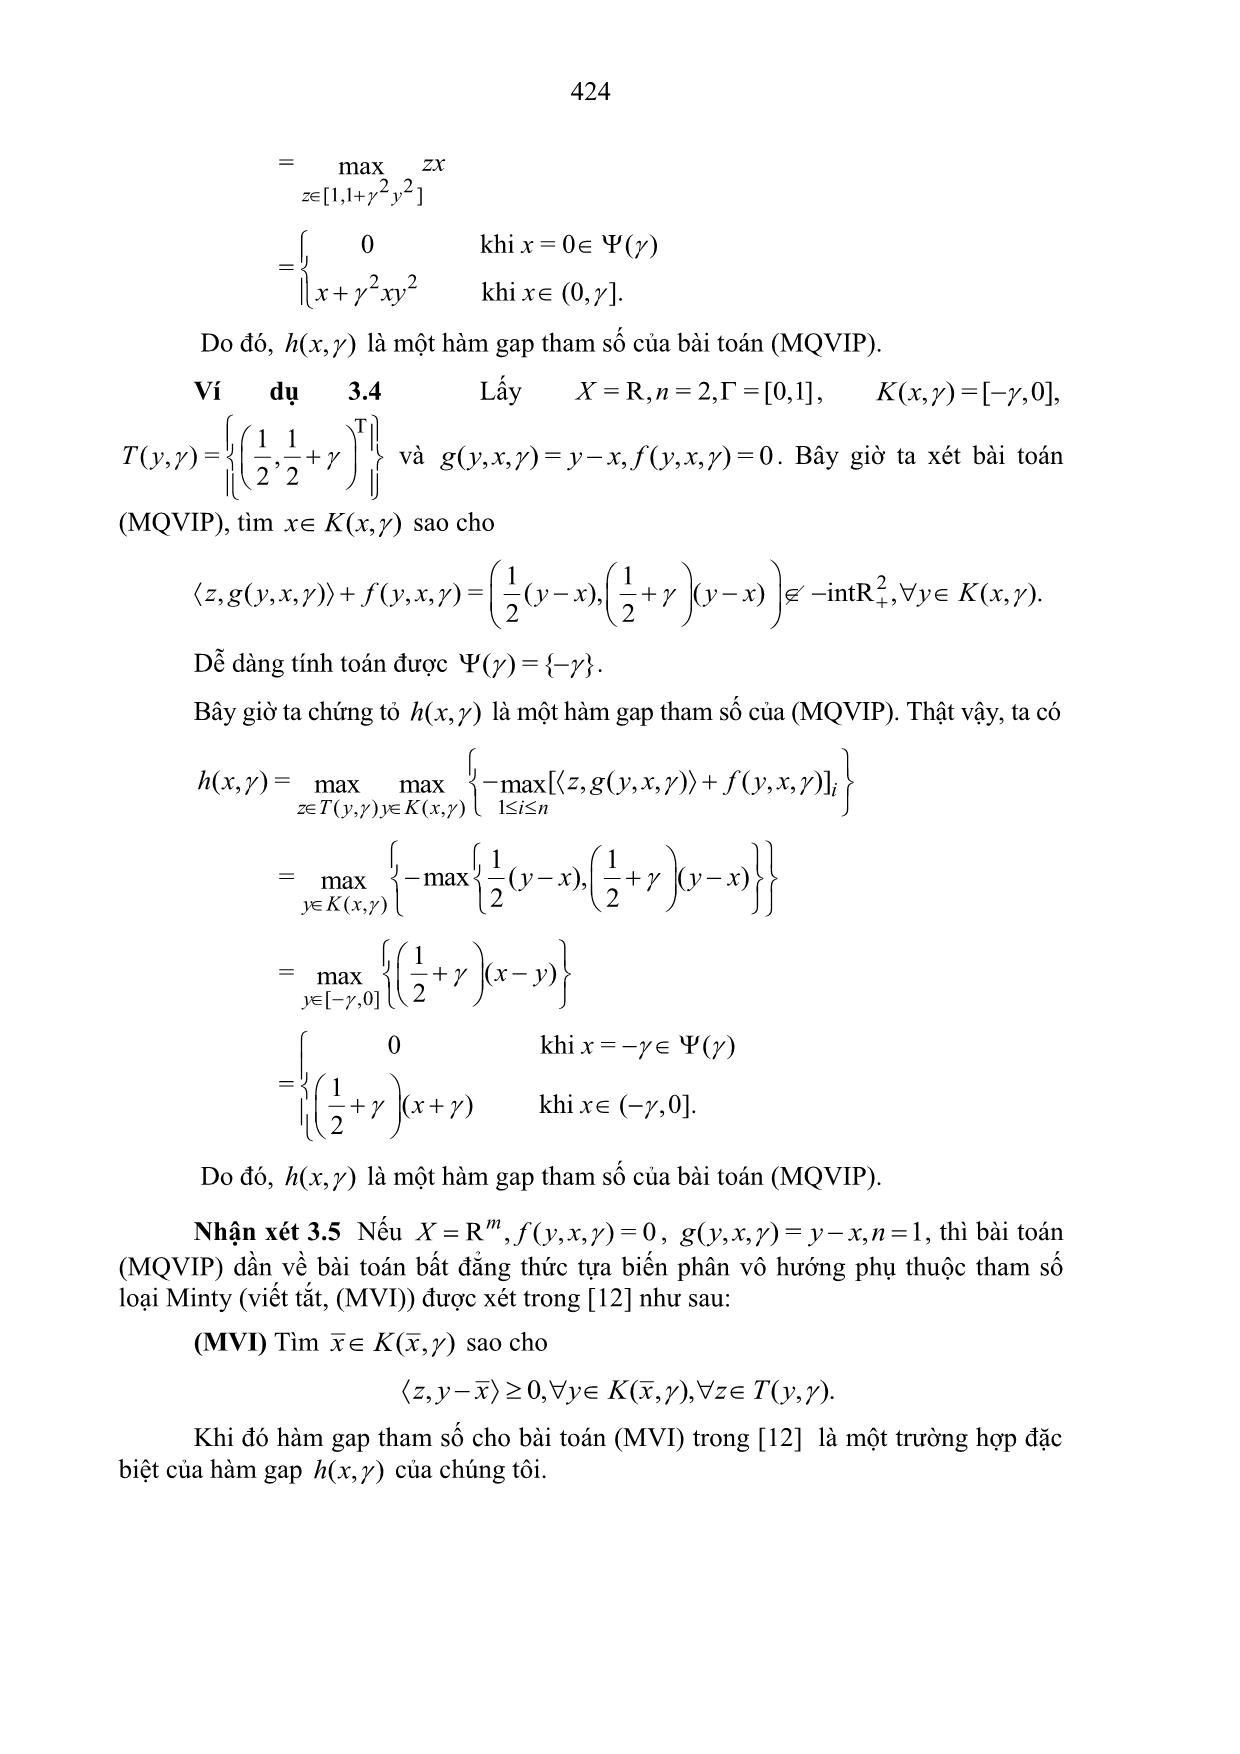 Tính liên tục của hàm gap cho bài toán bất đẳng thức tựa biến phân loại Minty trang 5